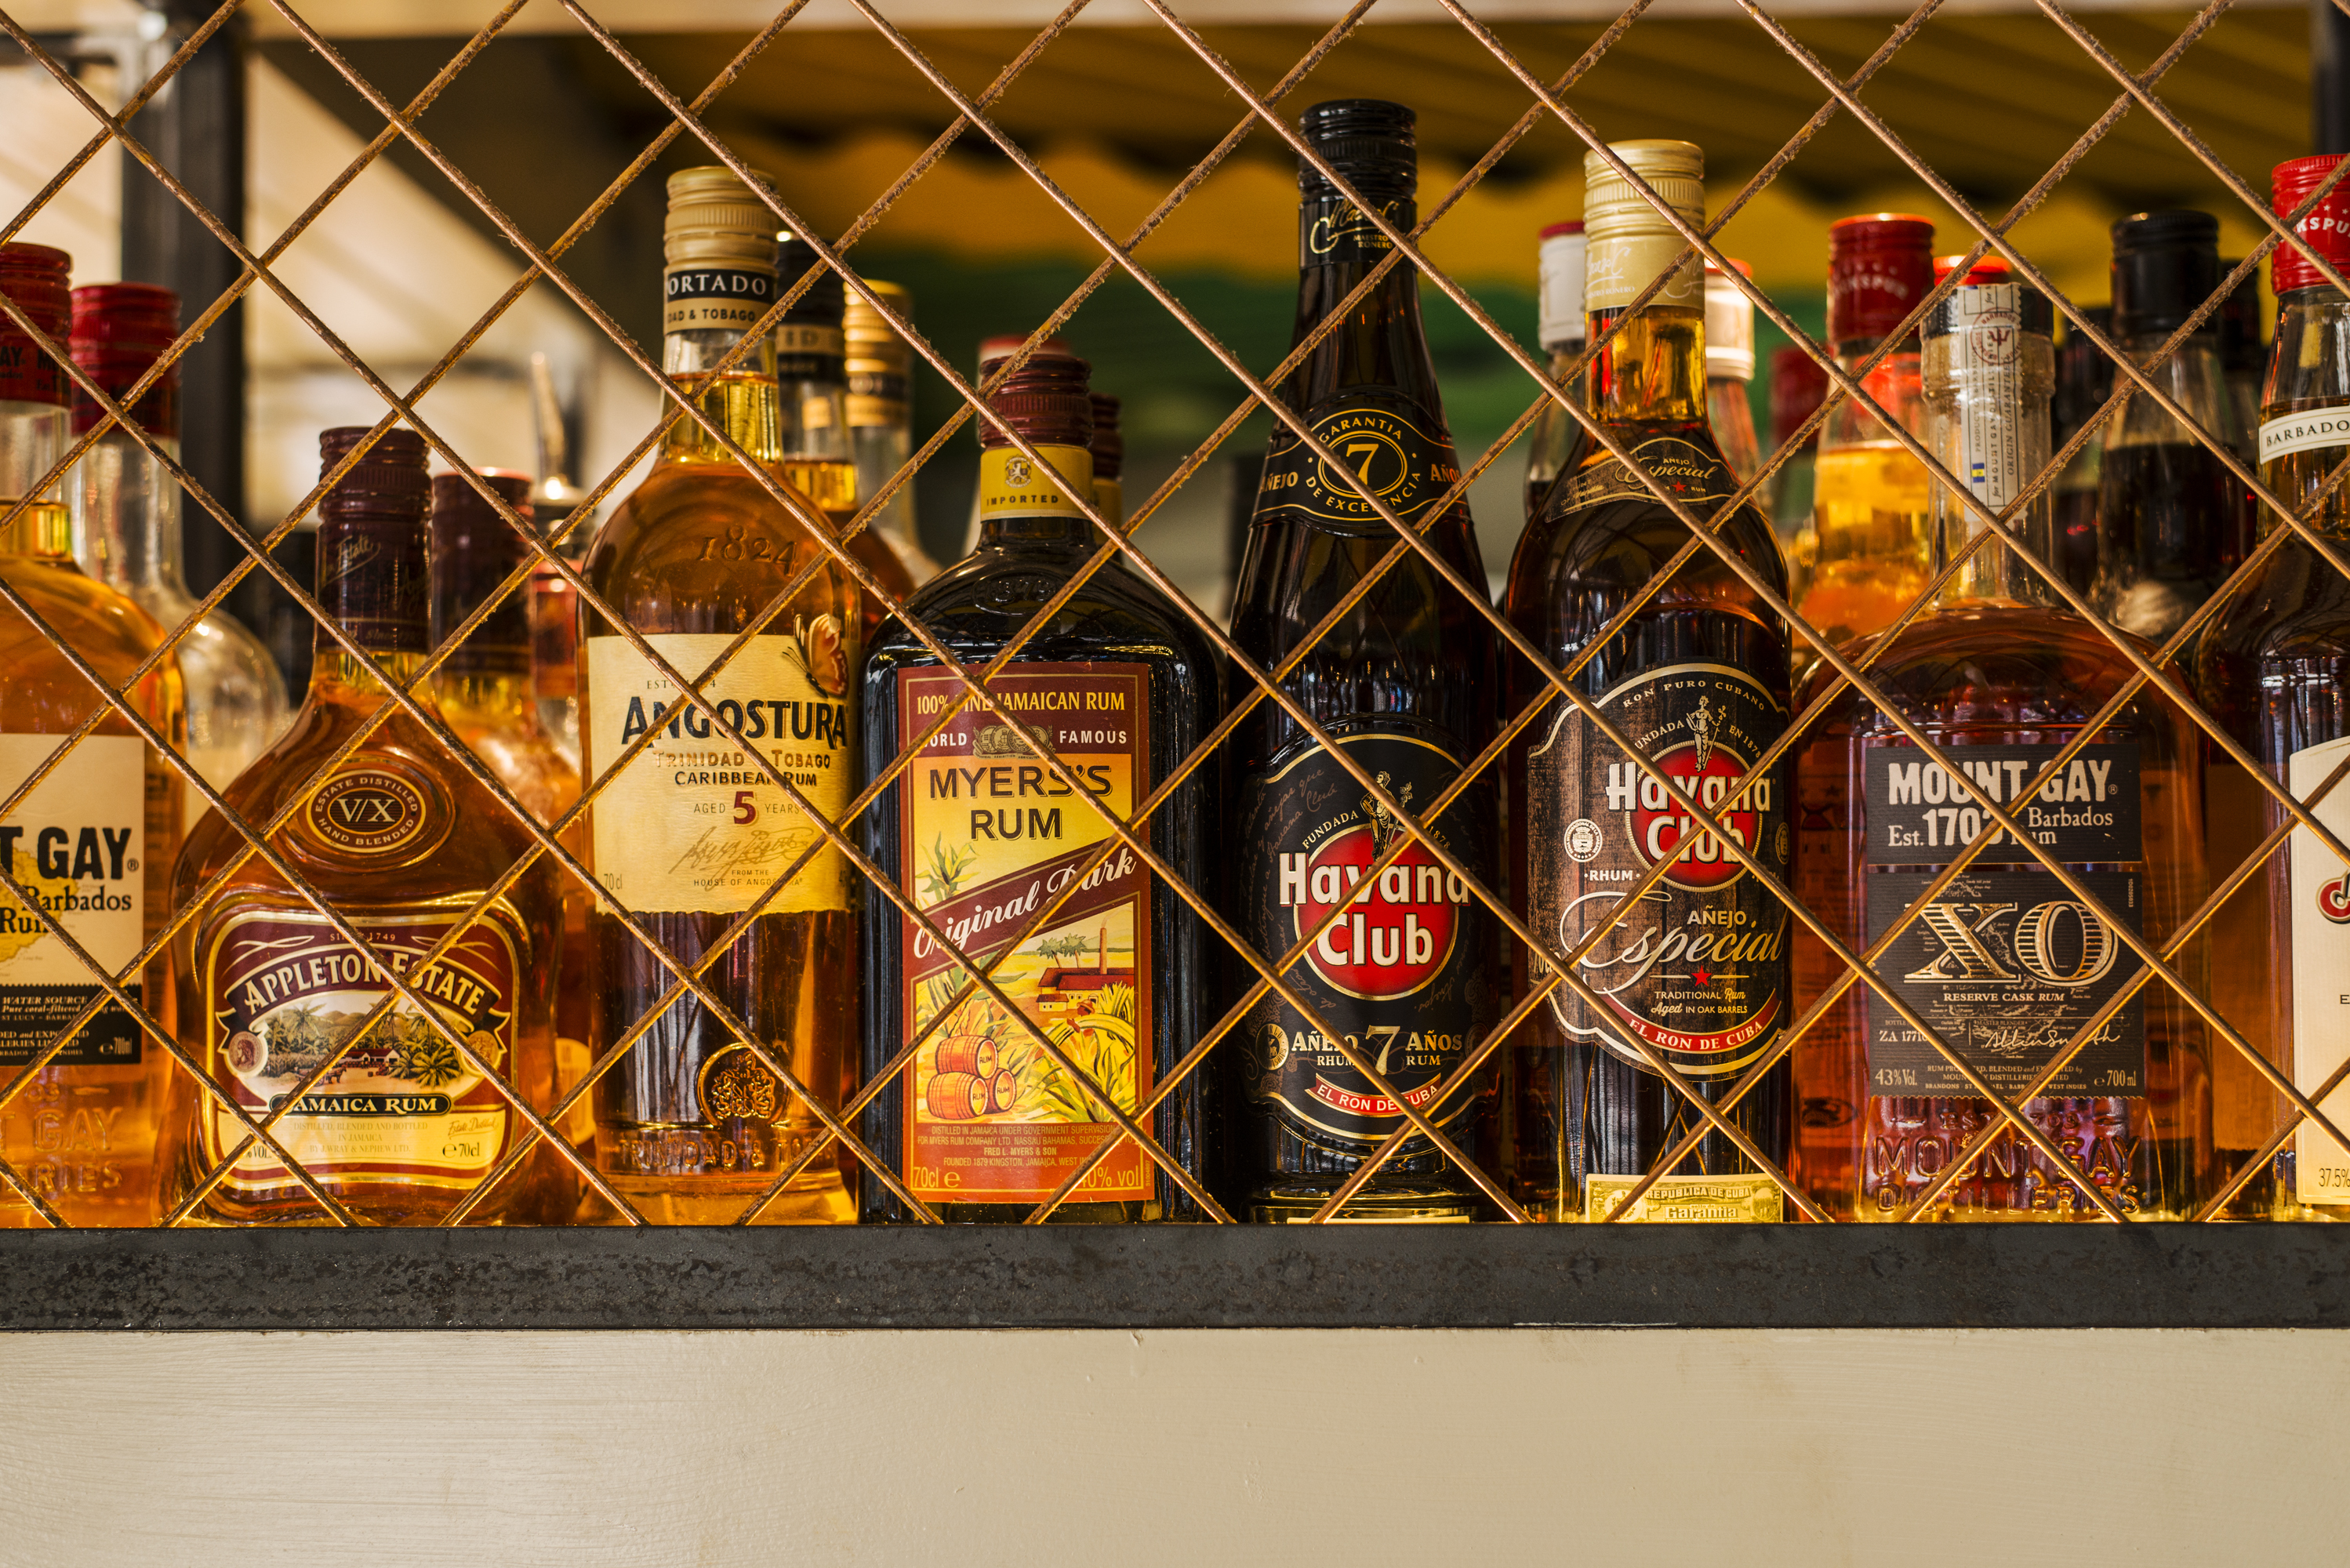 Turtle Bay rum bottles cage.jpg